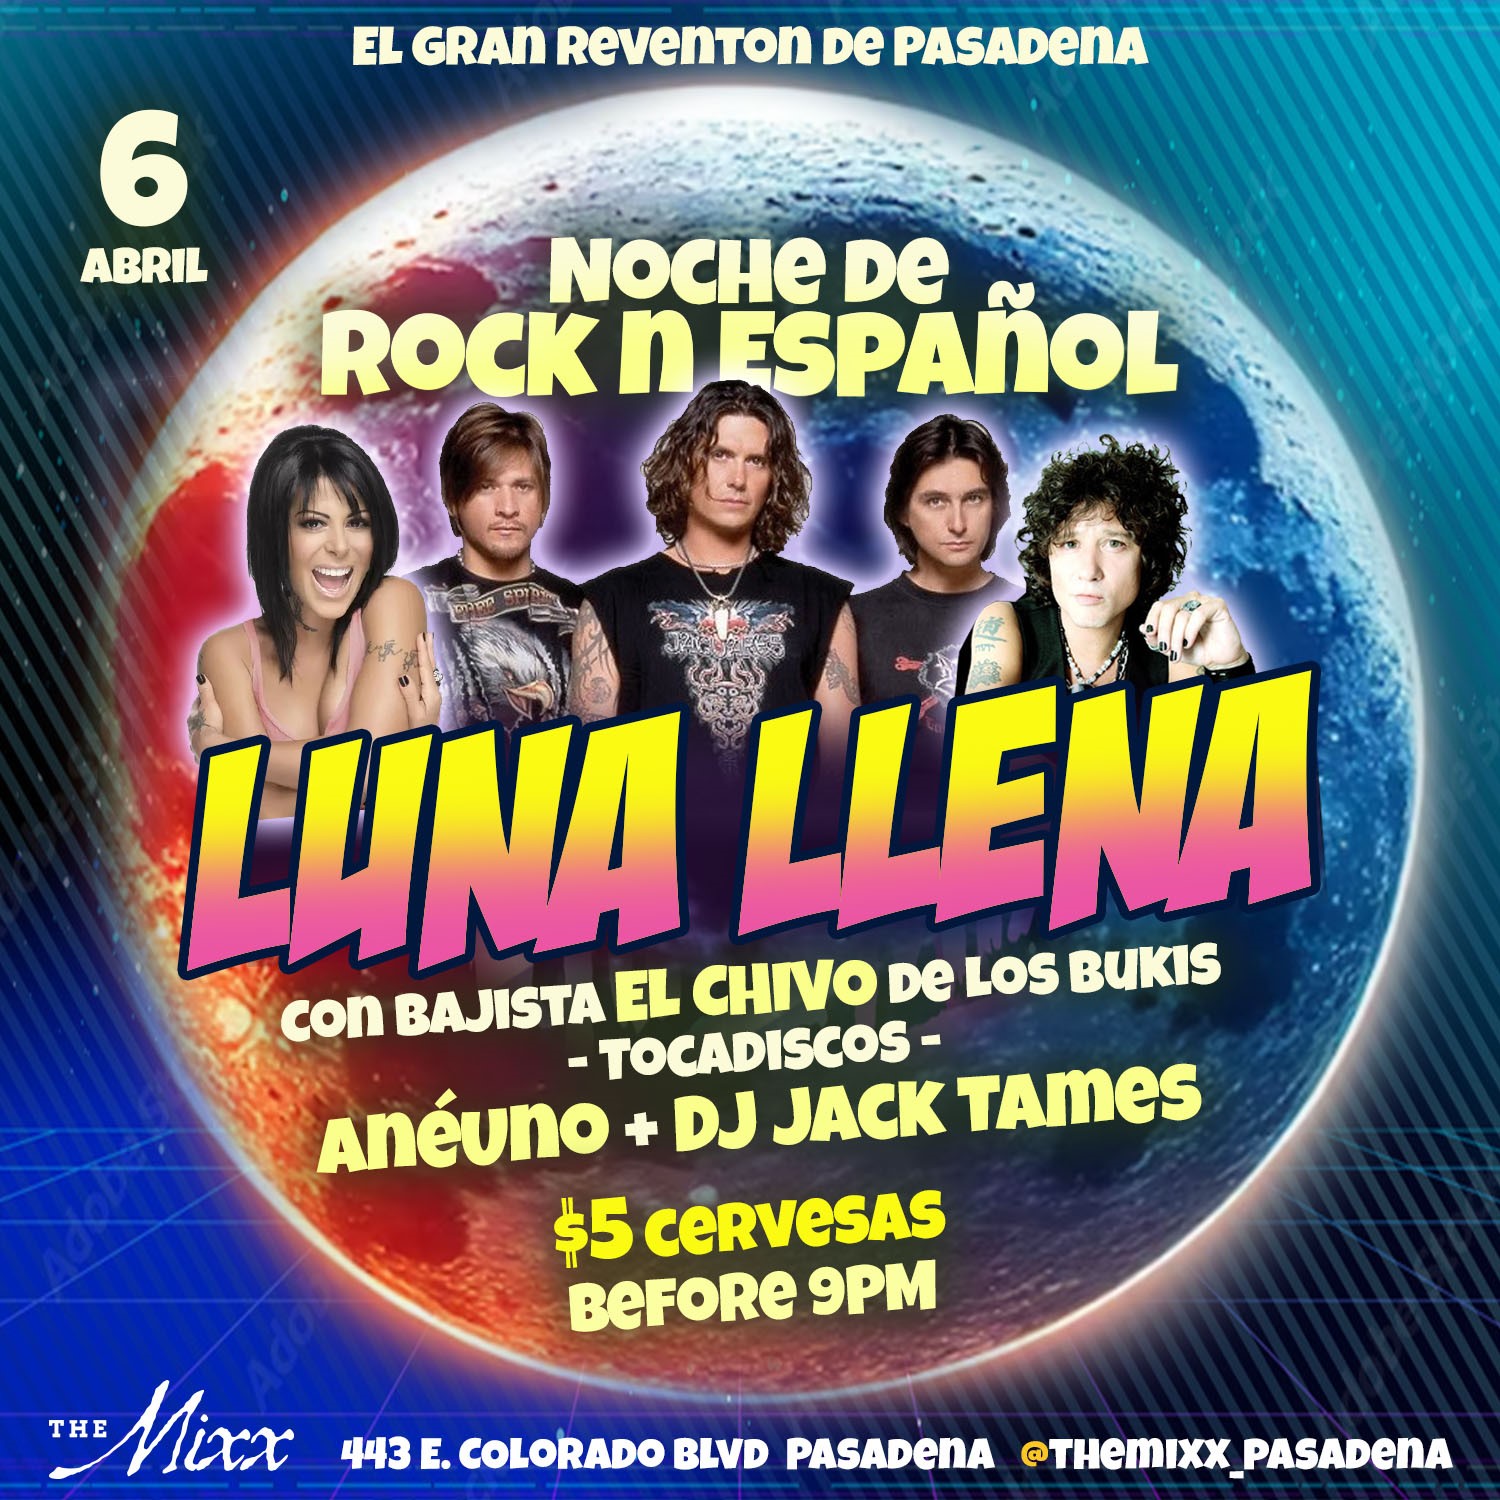 You are currently viewing Reventon Latino con lo mejor del Rock Latino en VIVO ft. Chivo de Los Bukis